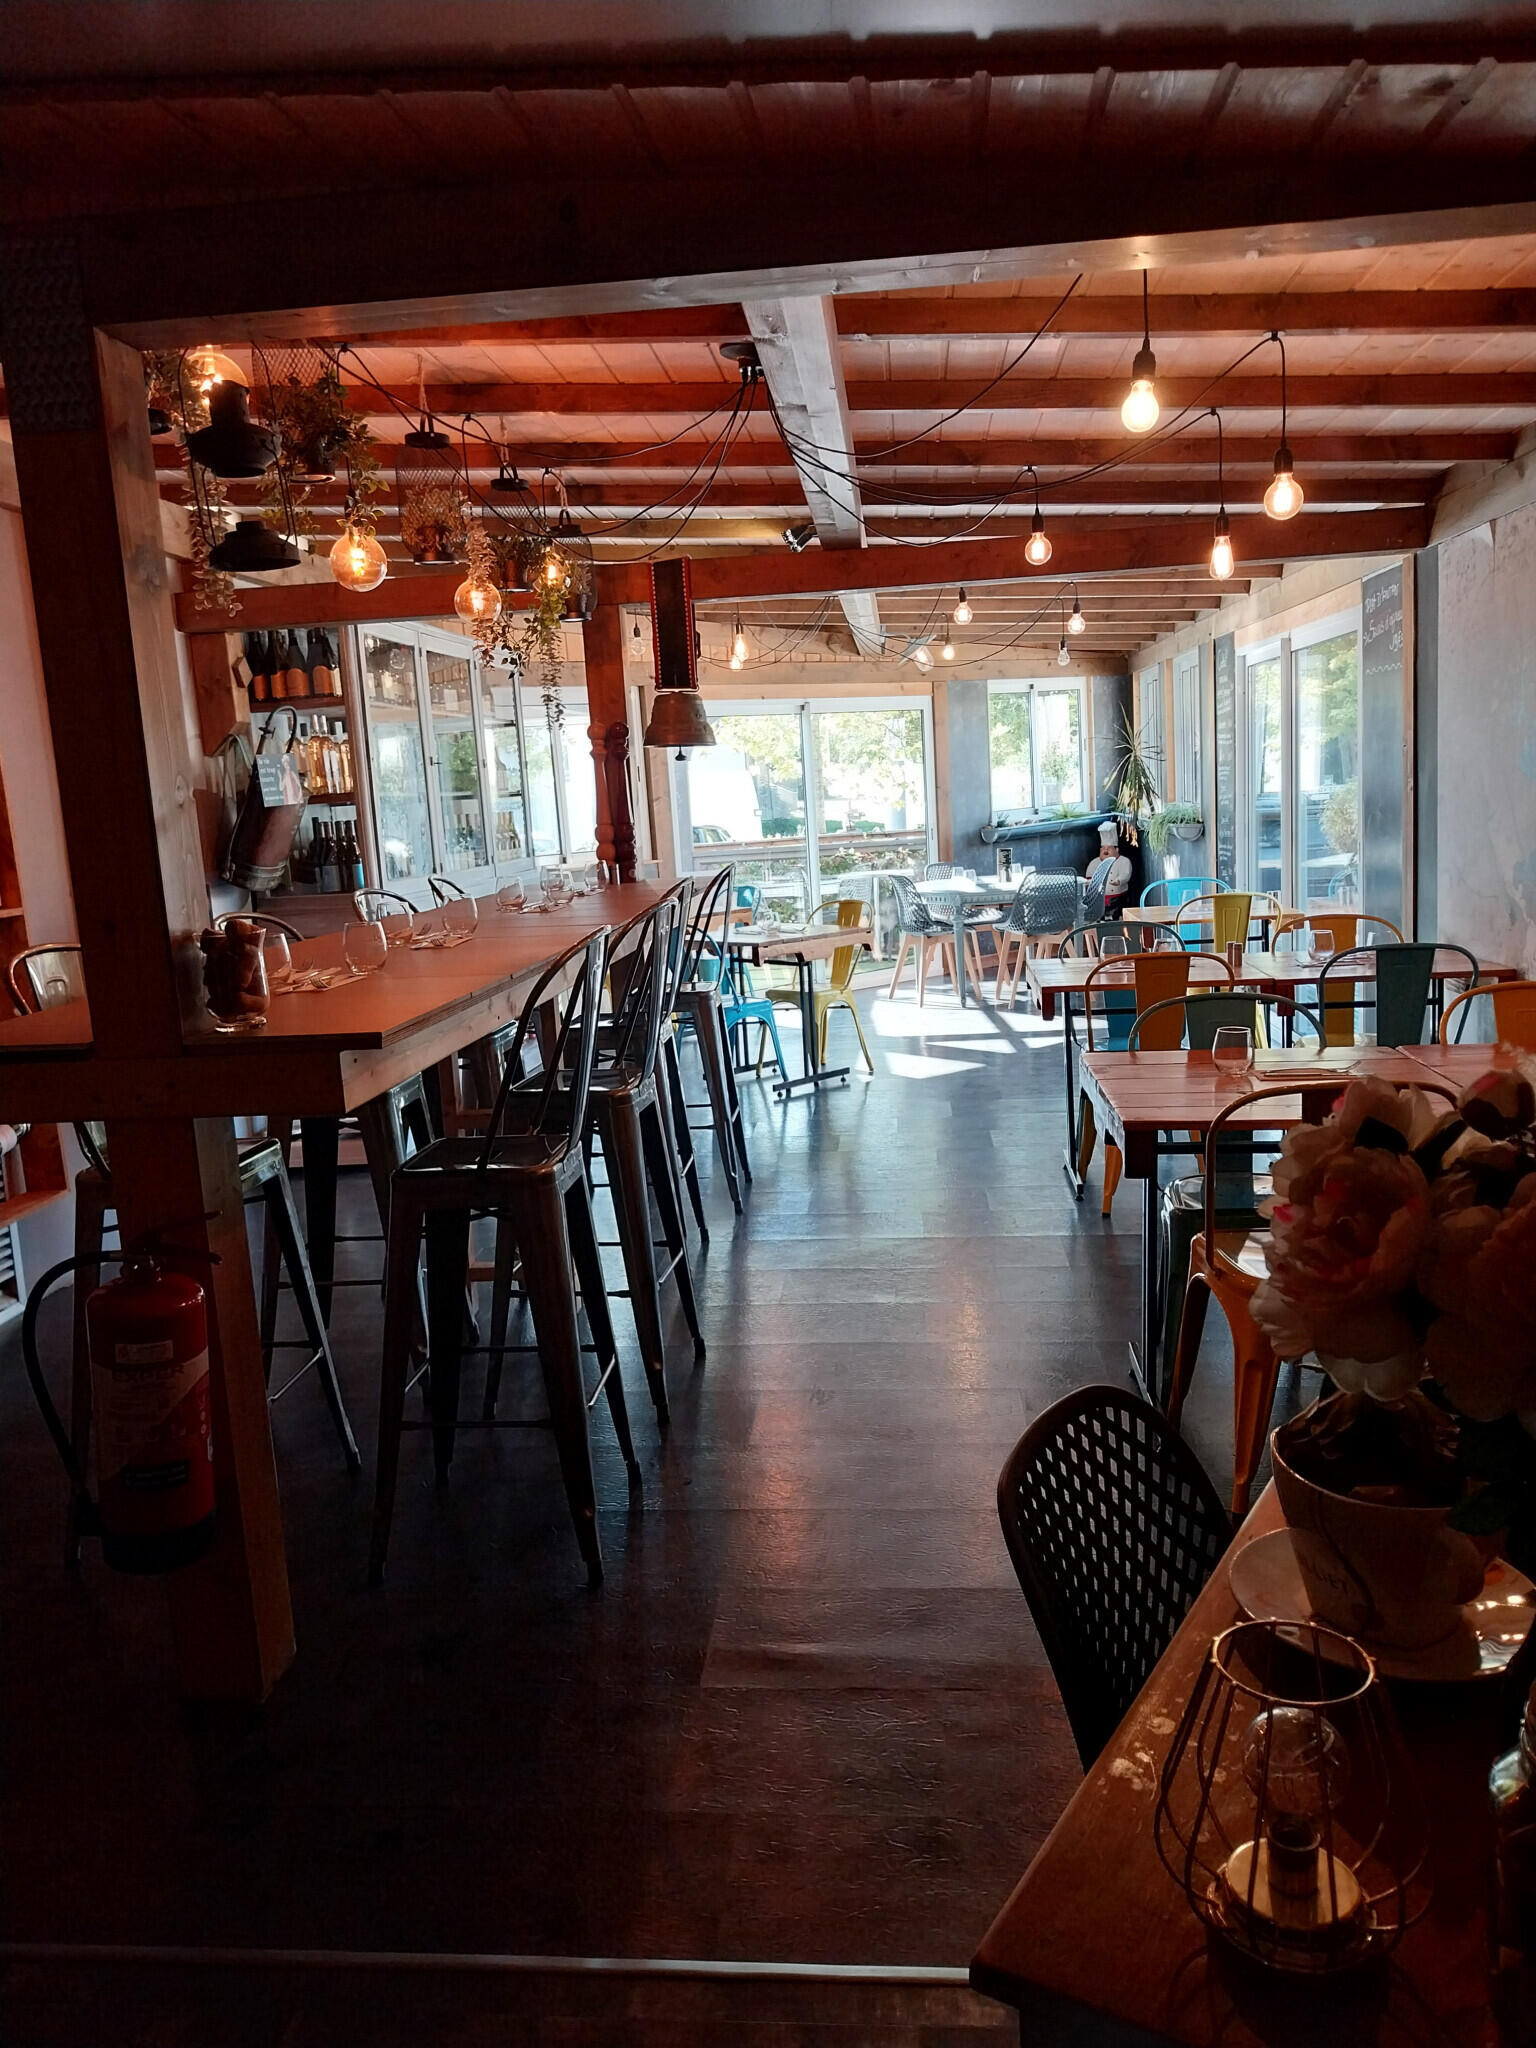 Vente bar restaurant et produits régionaux au Jura